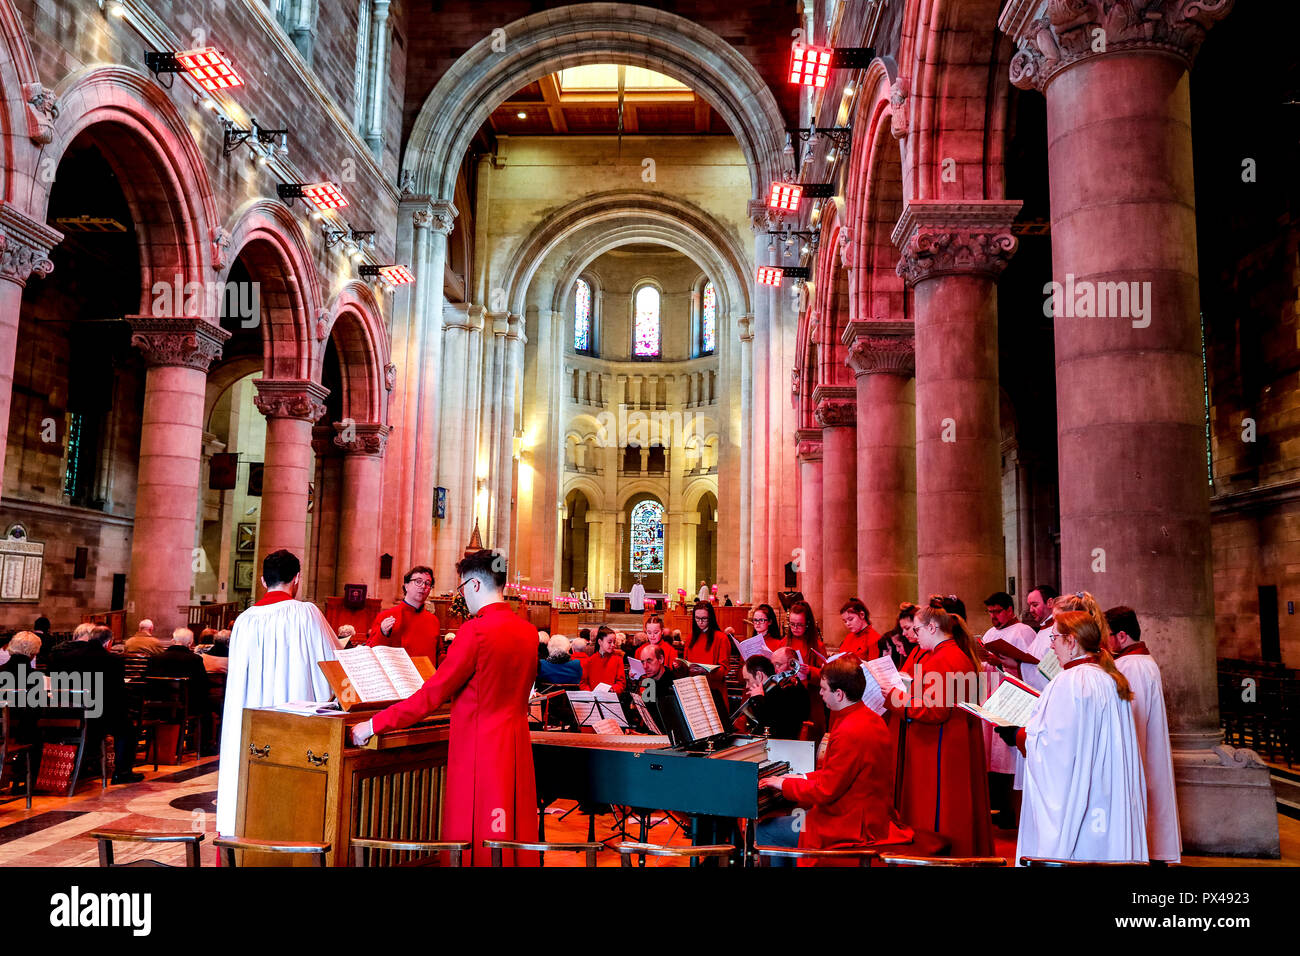 St Ann's protestantischen Kathedrale in Belfast, Nordirland. Sonntag Service. Chor. Ulster, Großbritannien Stockfoto